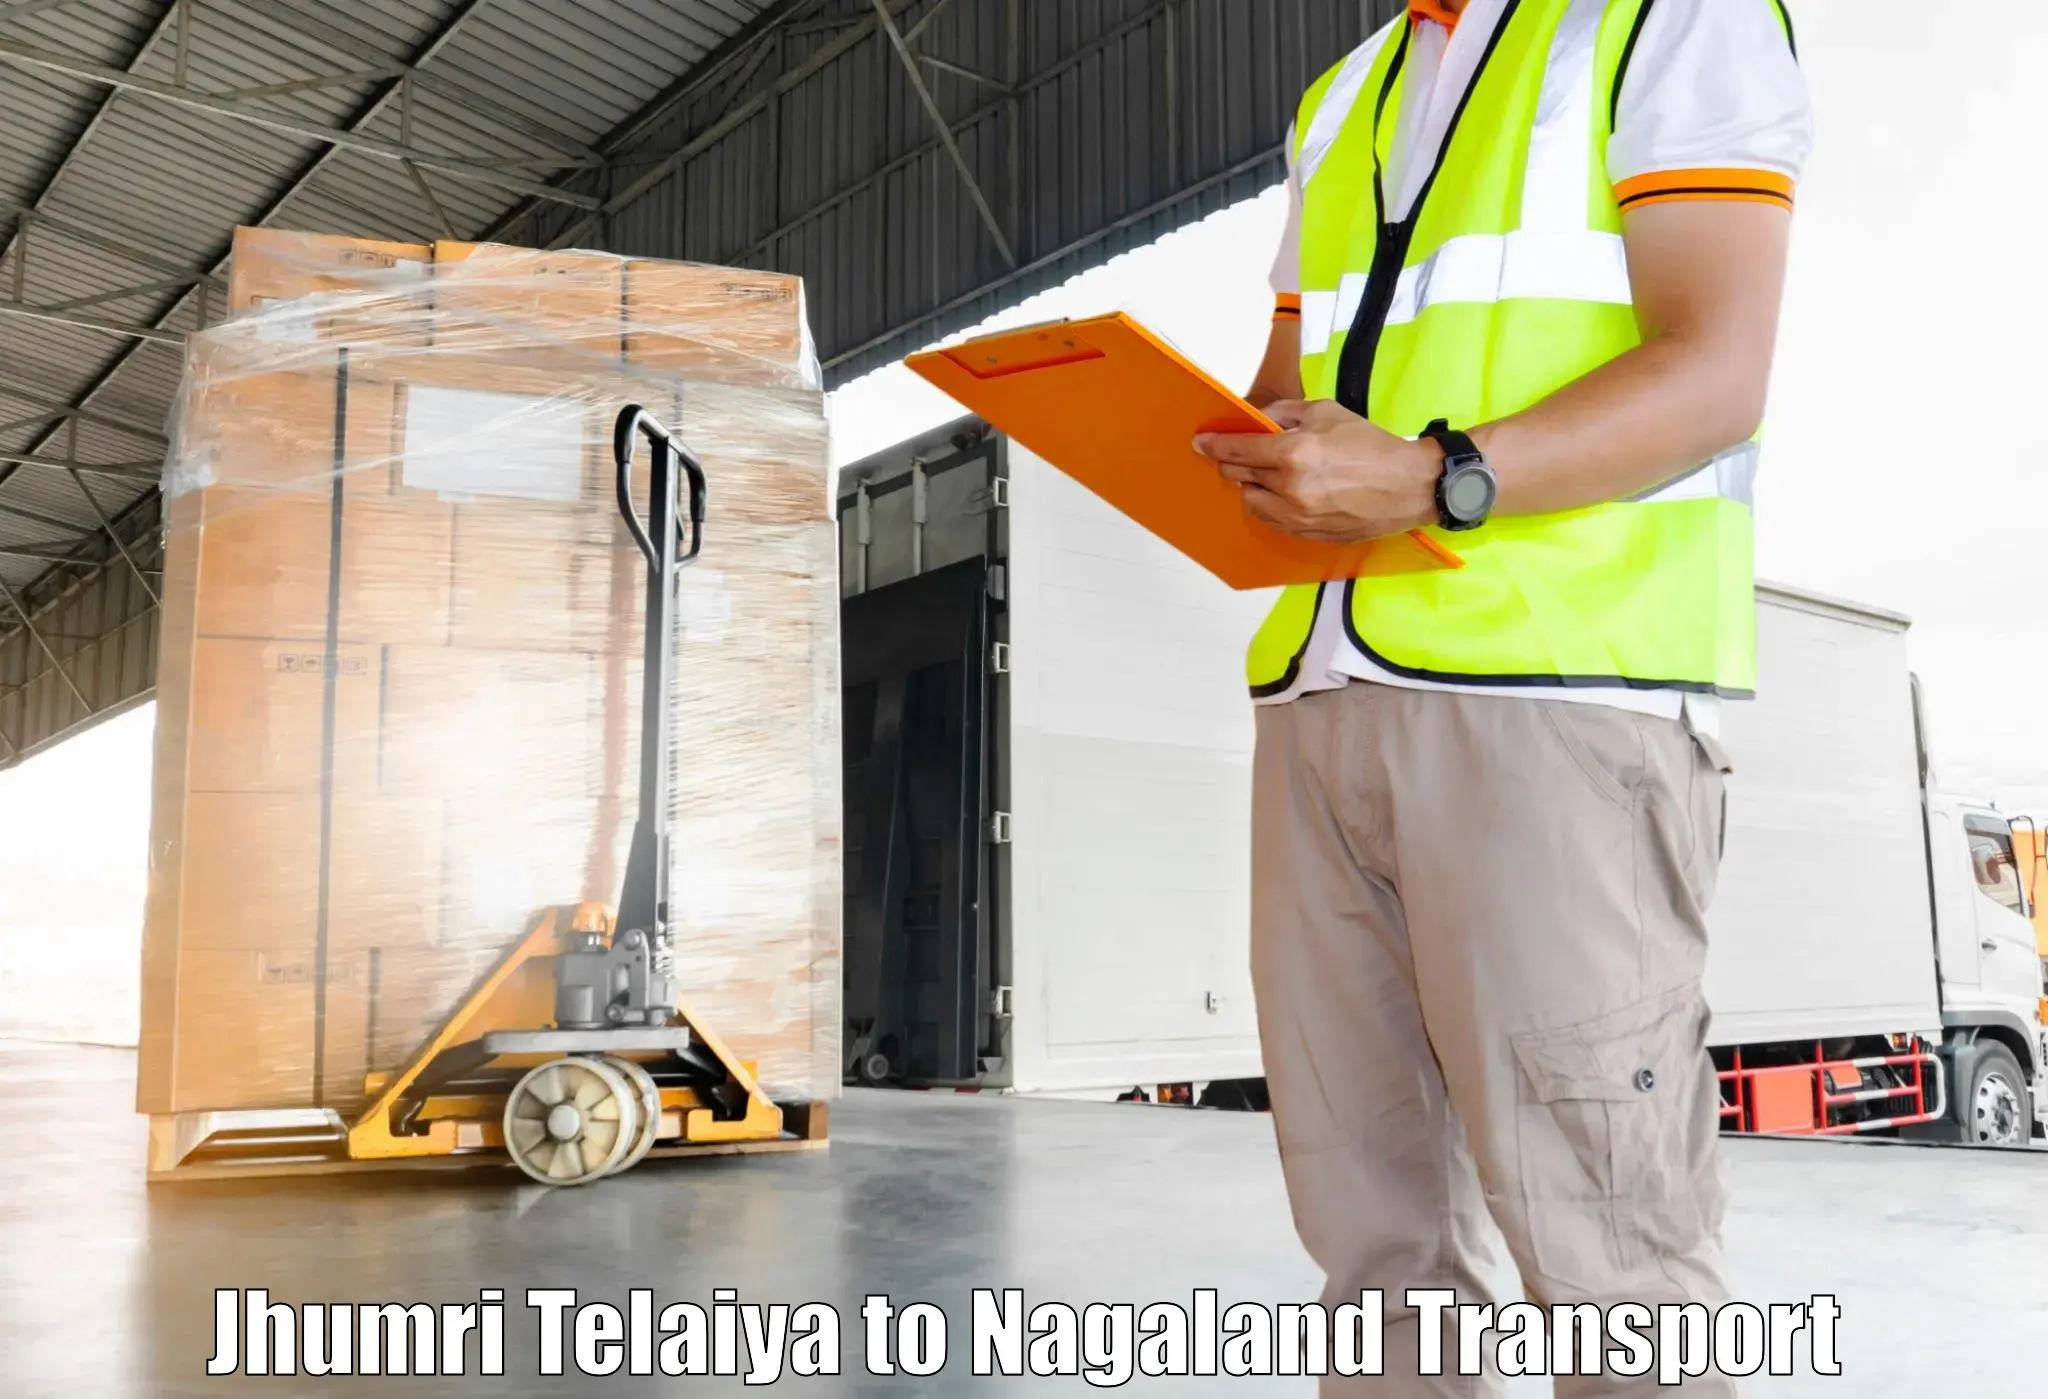 Transport in sharing Jhumri Telaiya to Nagaland